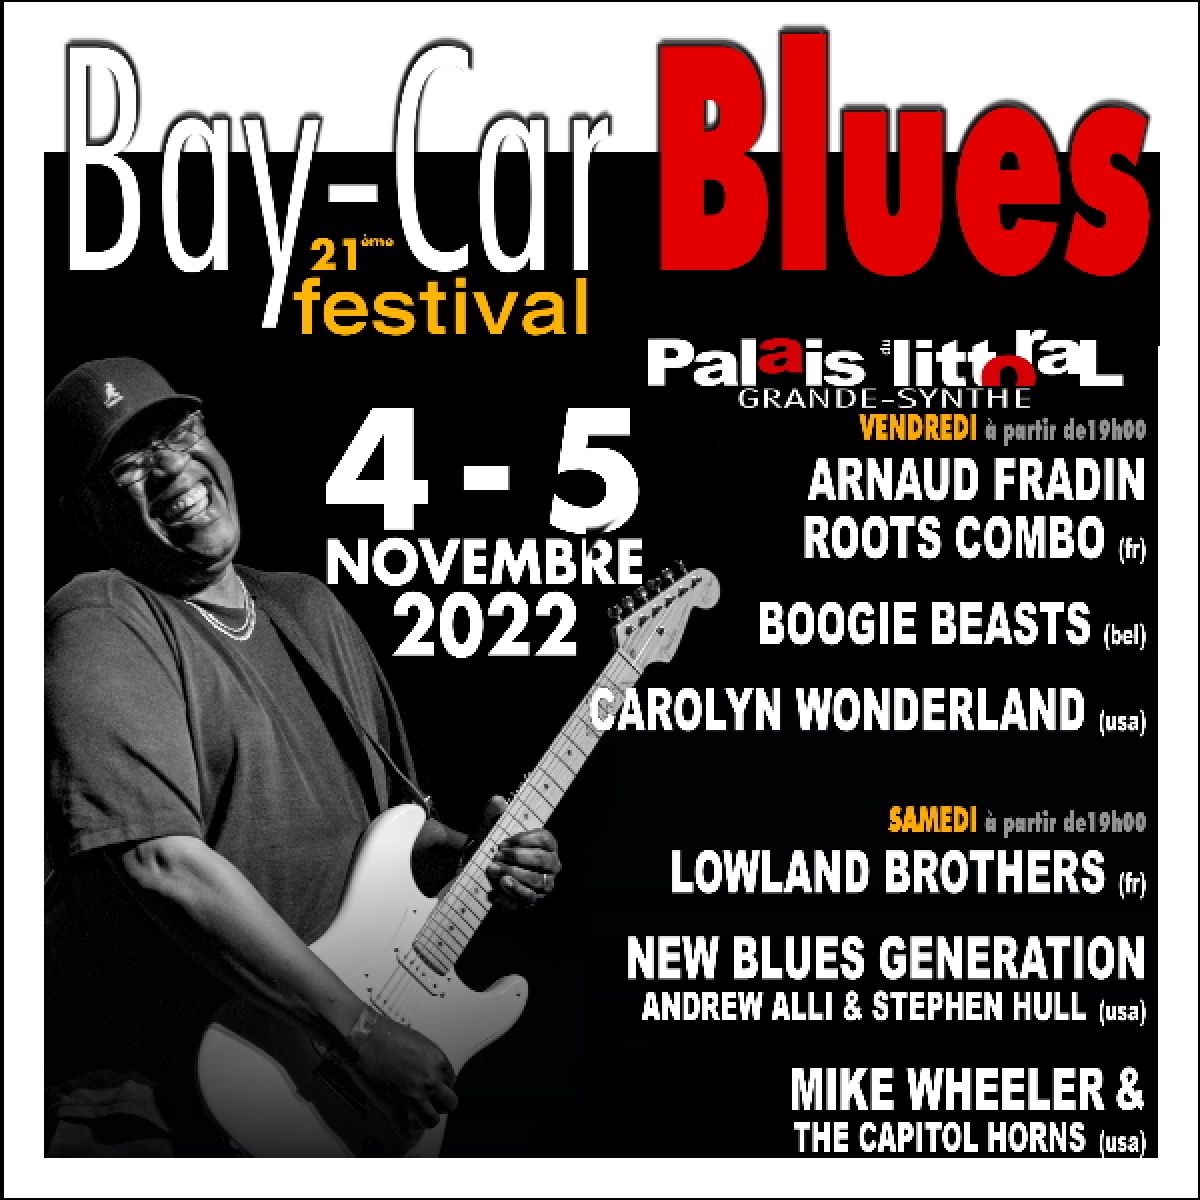 Bay Car Blues Festival 2022